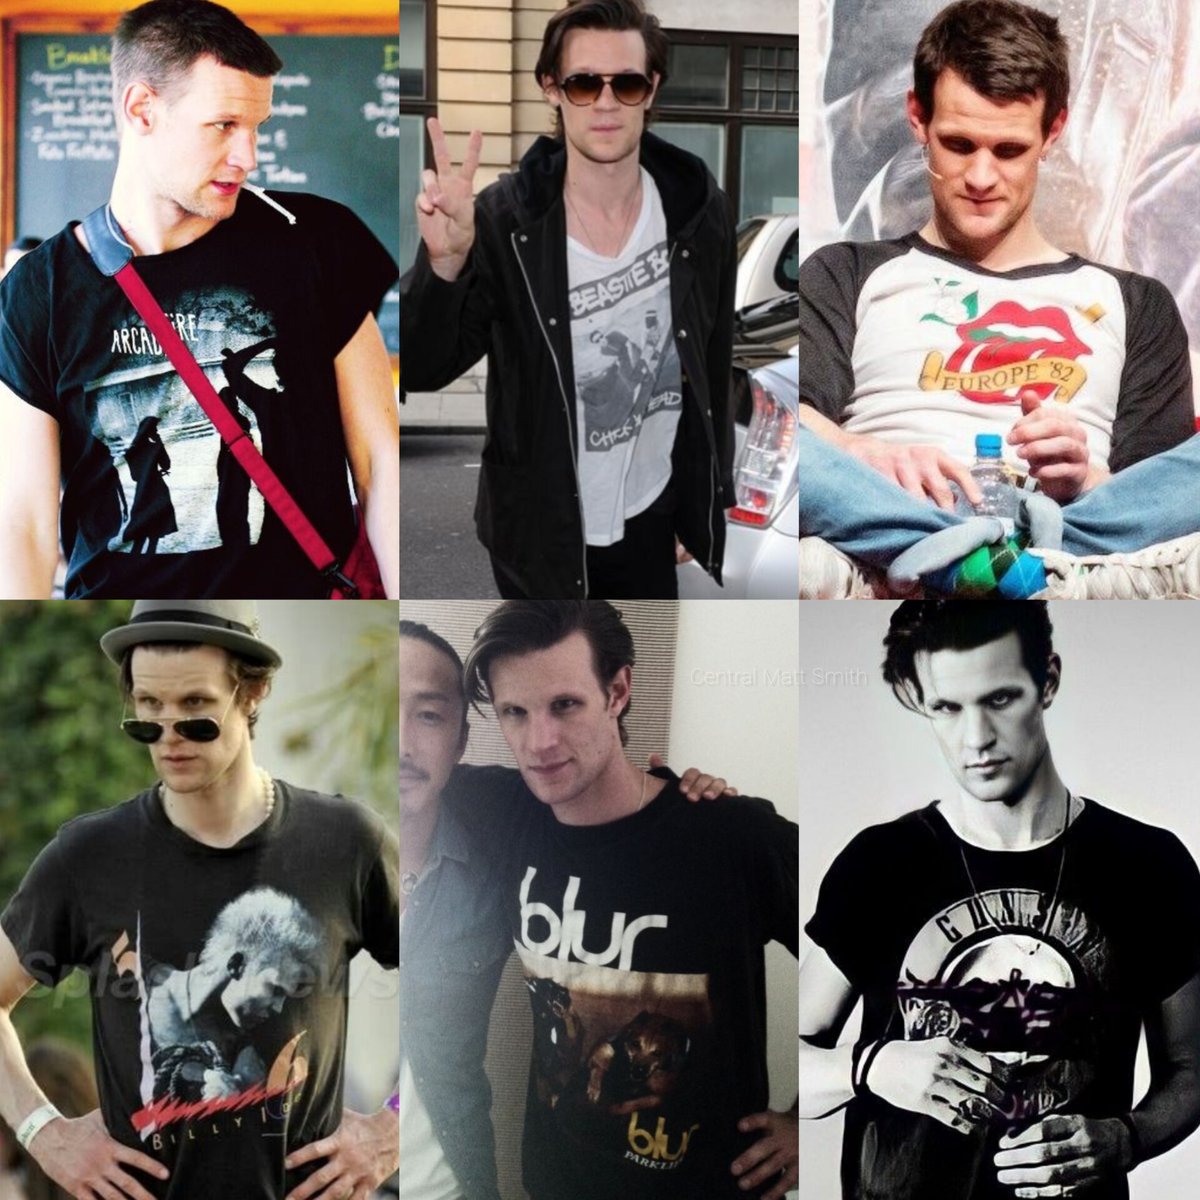 Matt em sua era camiseta de banda >>>>>>